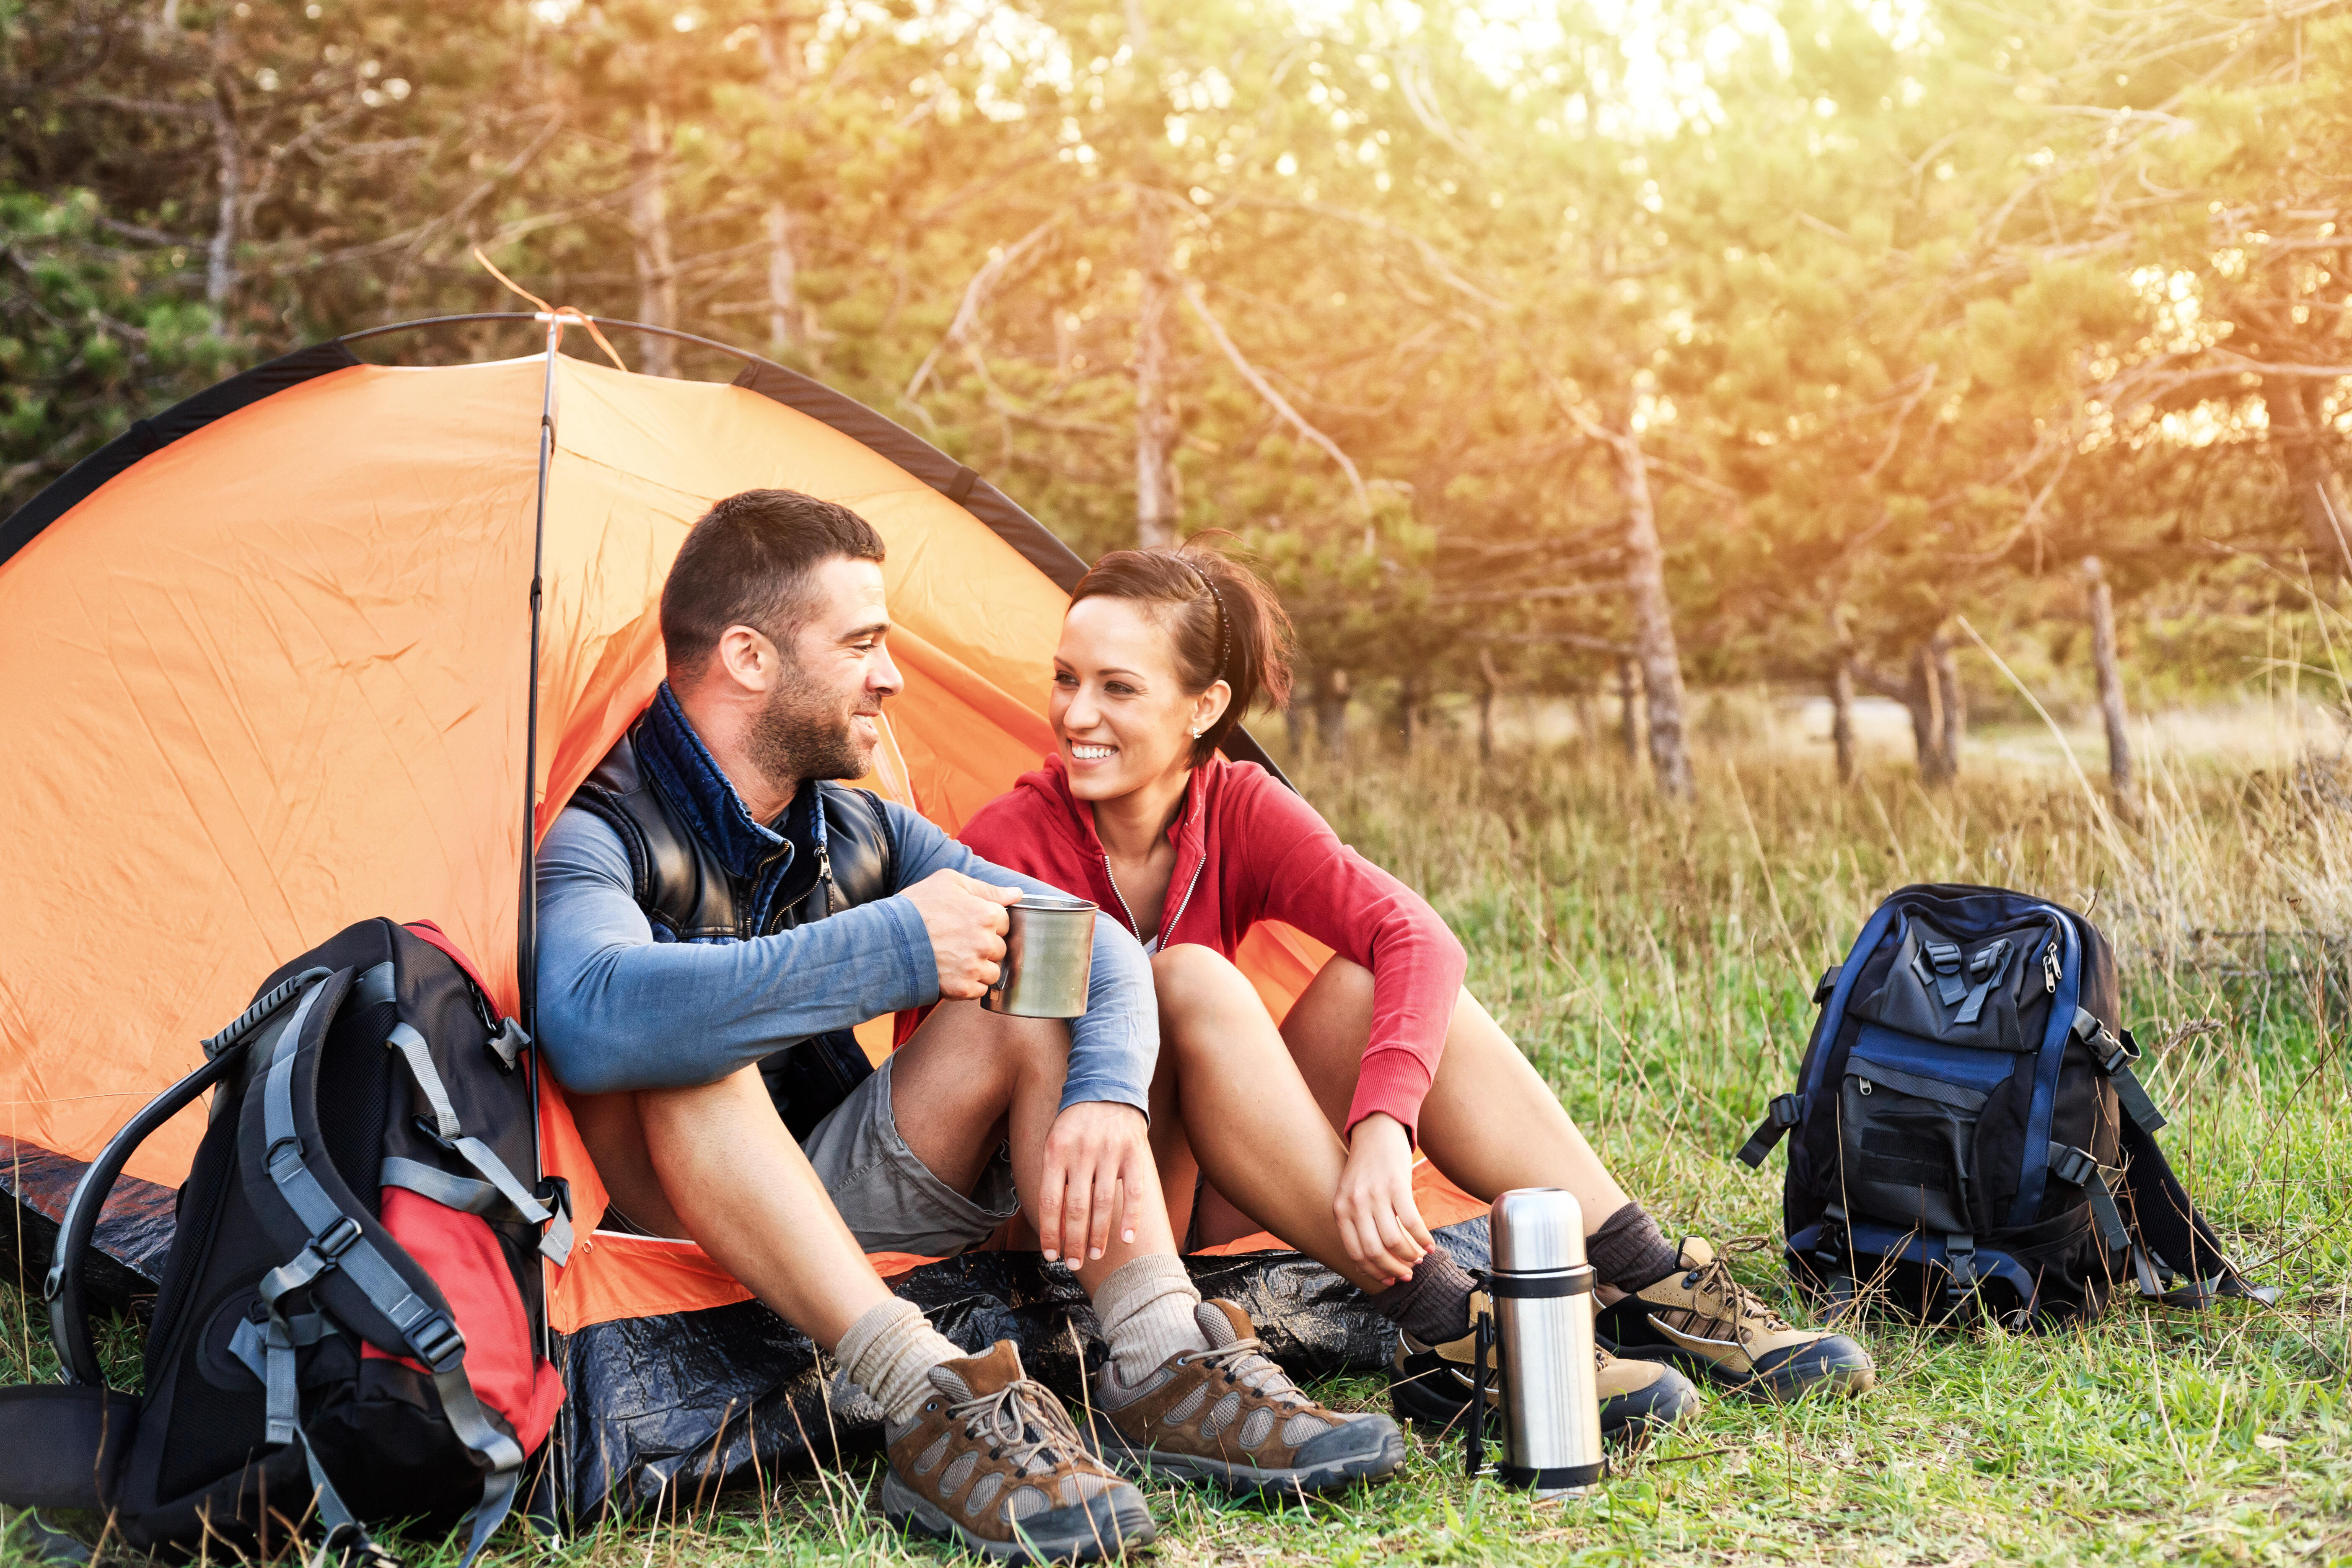 Camping together. Туризм с палатками. Палатка турист. Люди на природе с палатками. Поход на природу.